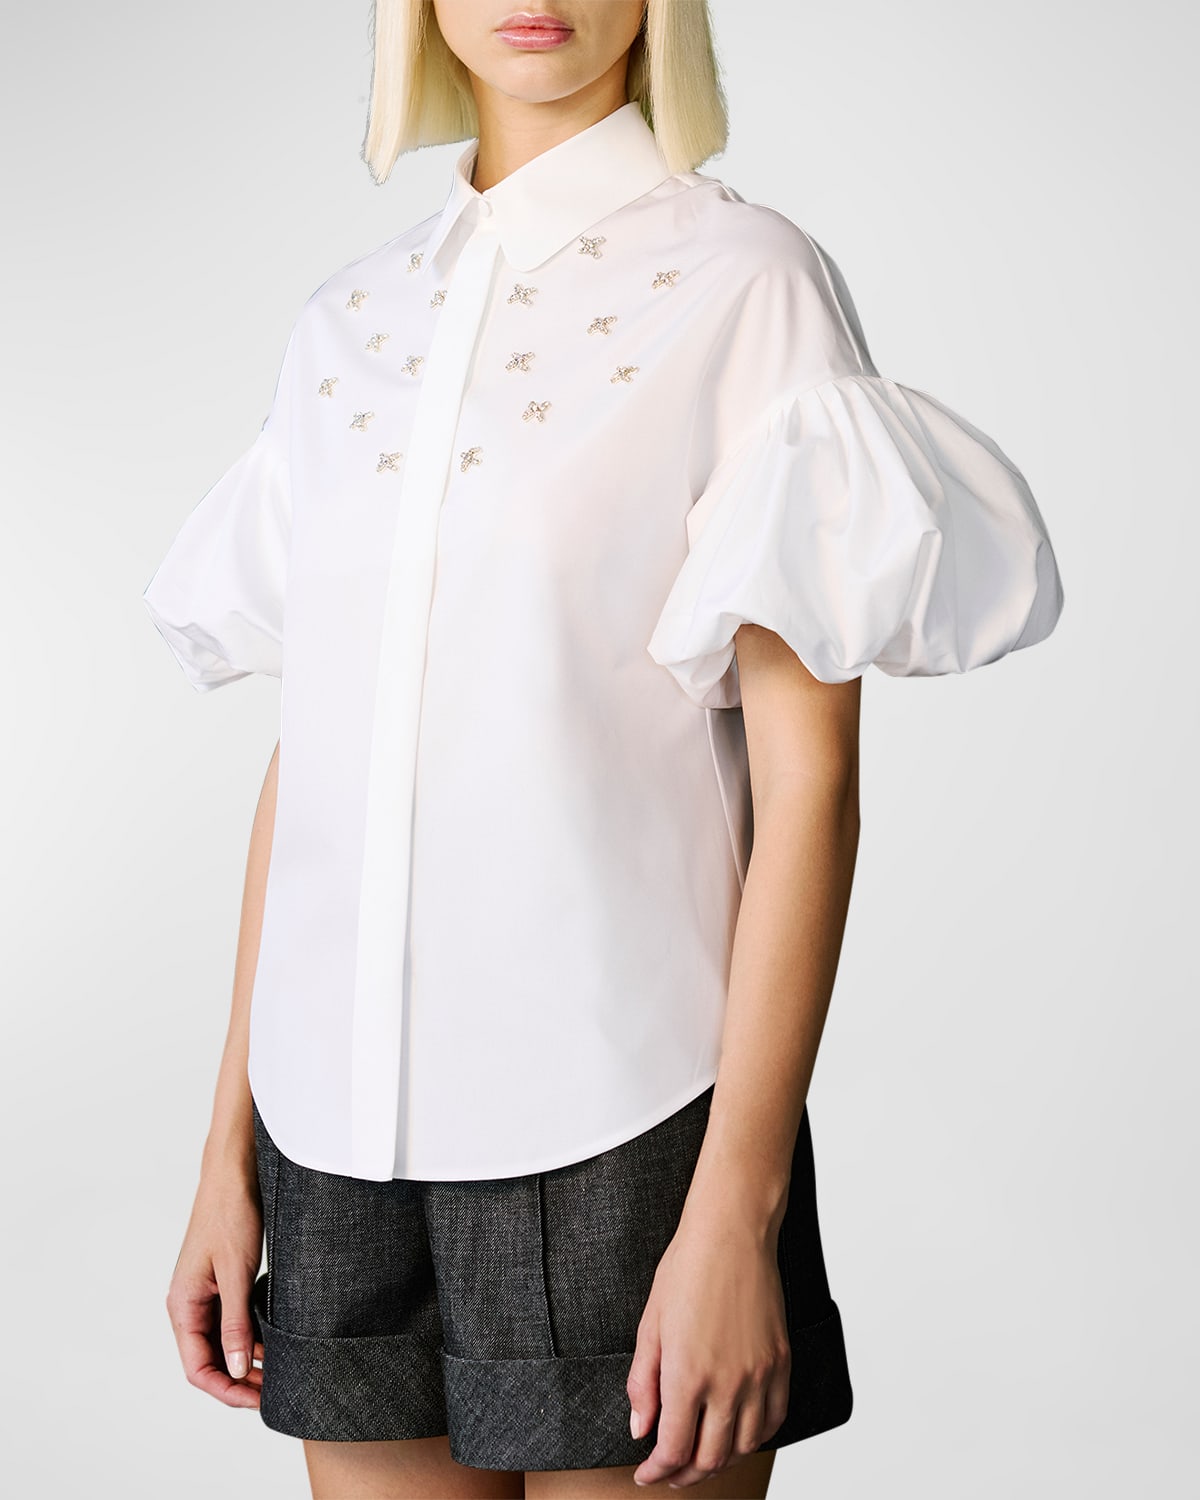 Dice Kayek Crystal-embellished Short-sleeved Shirt In White